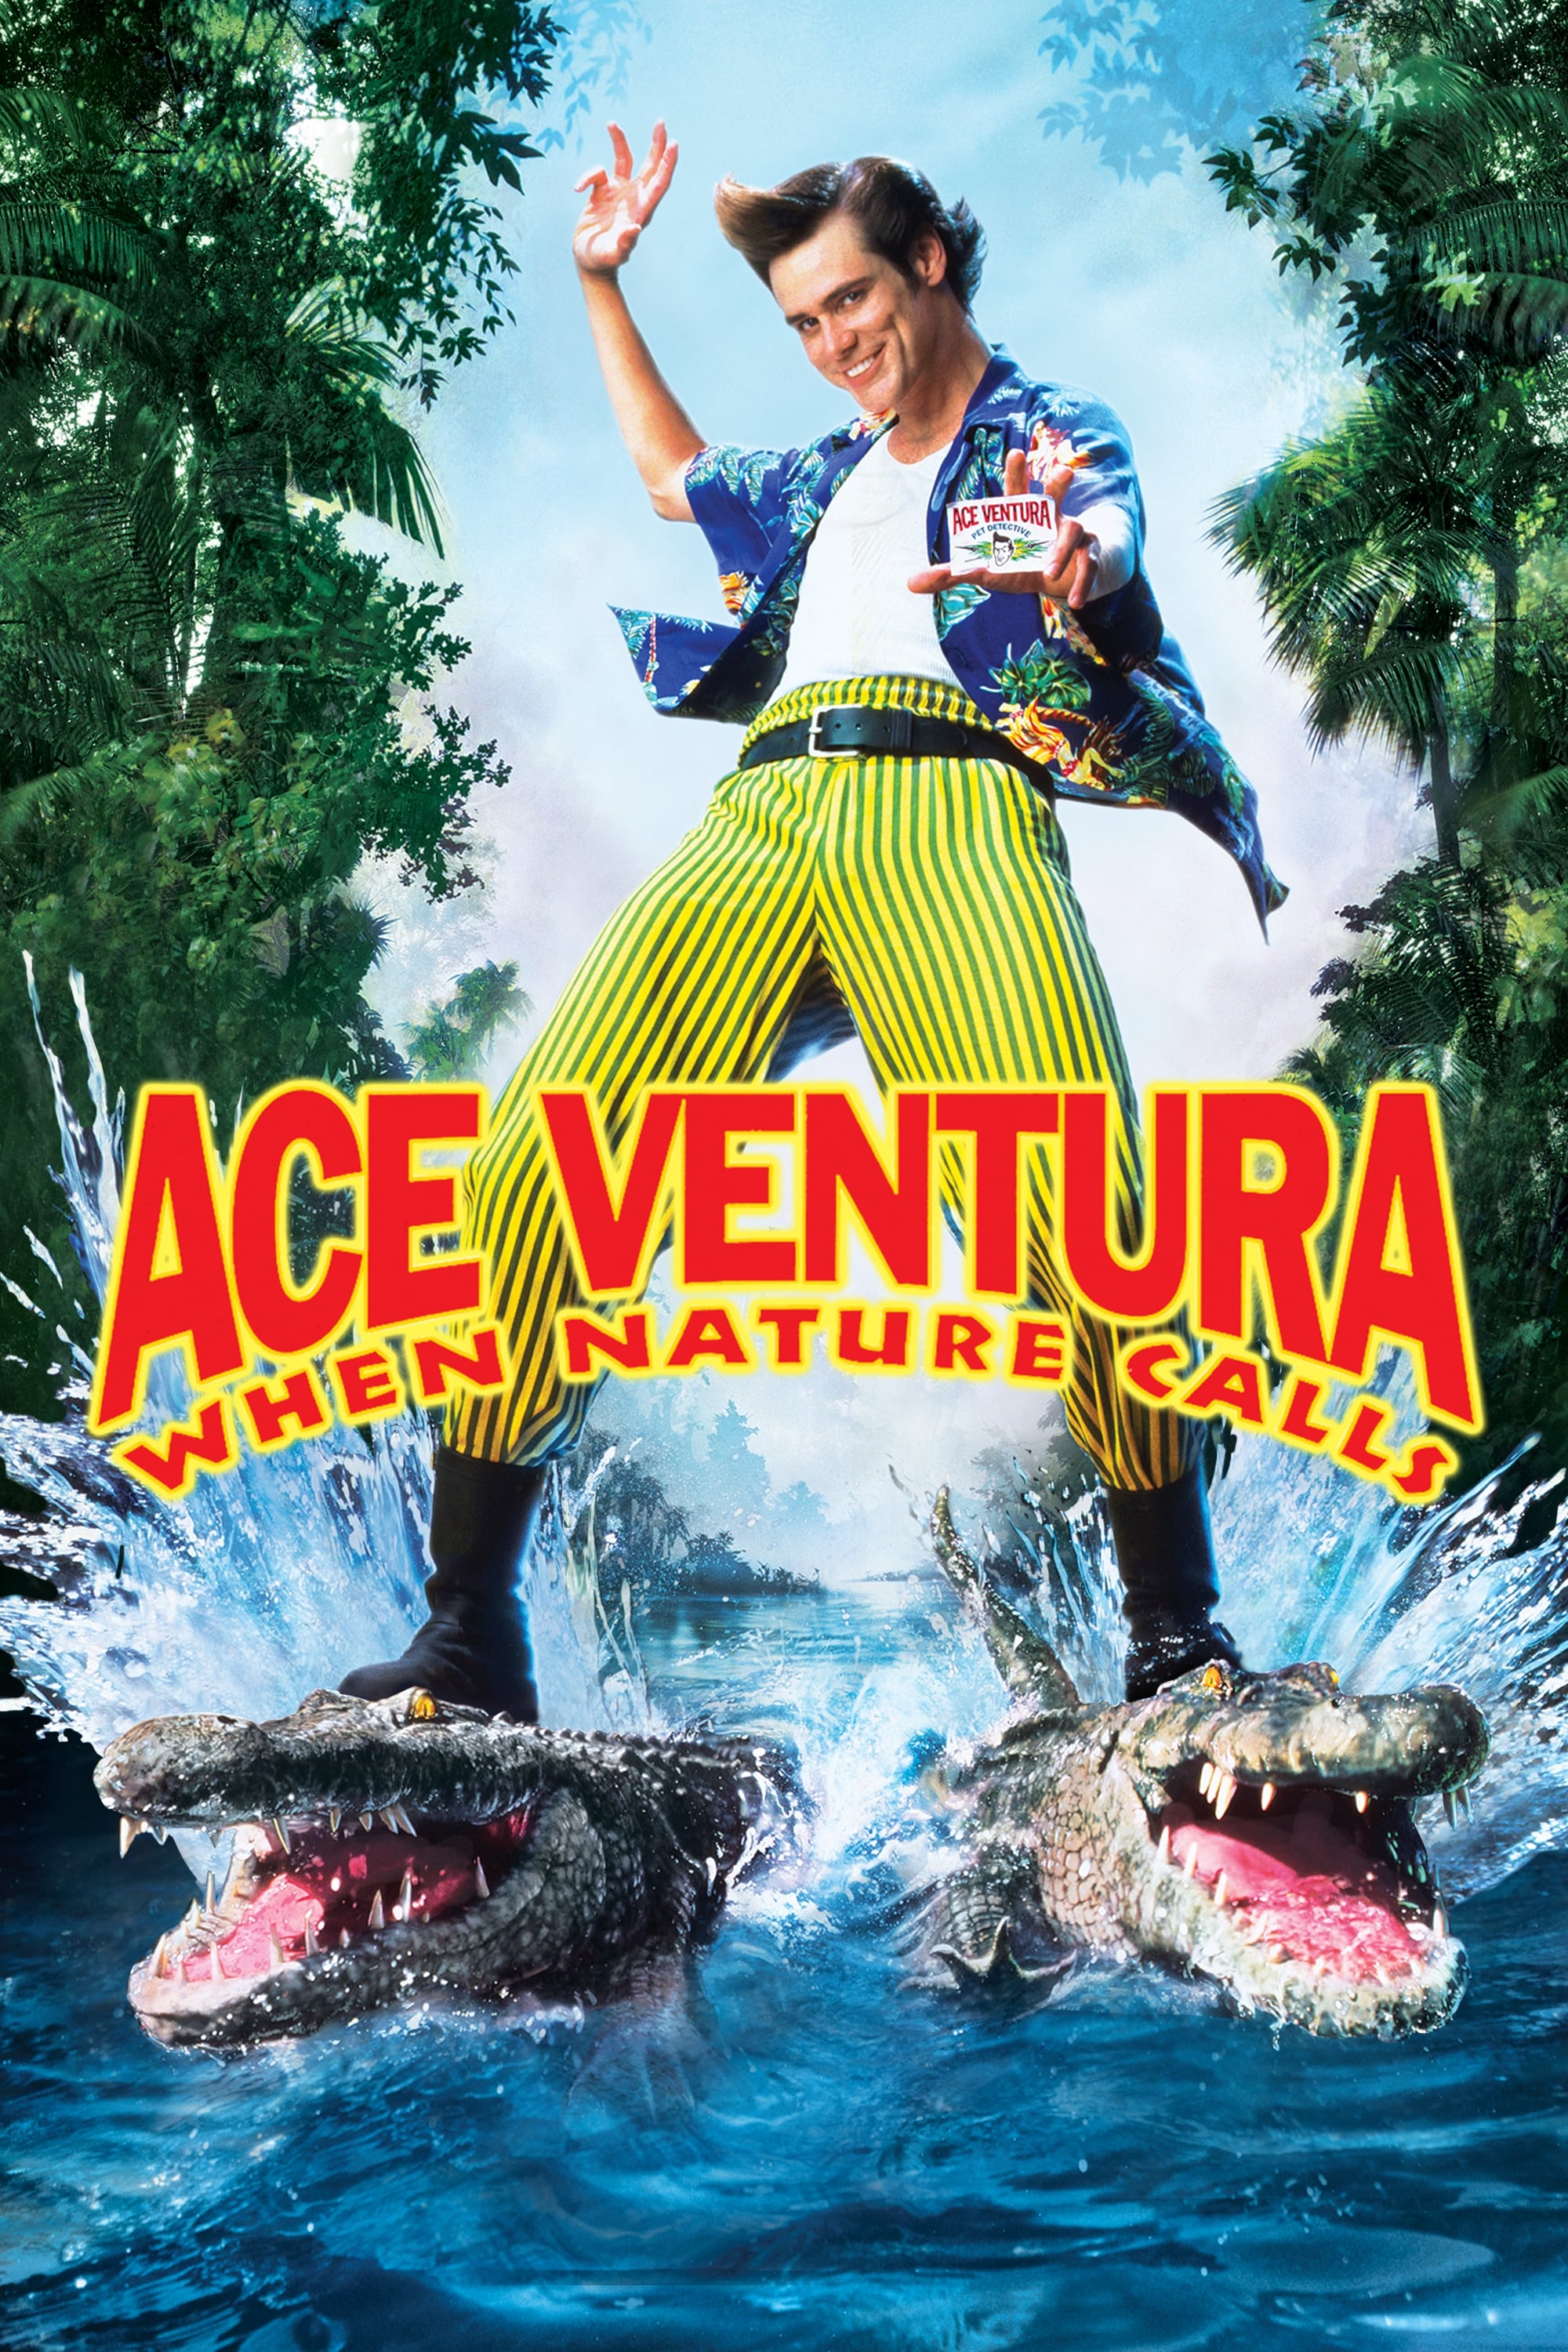 Ace Ventura - Jetzt wird's wild (1995)